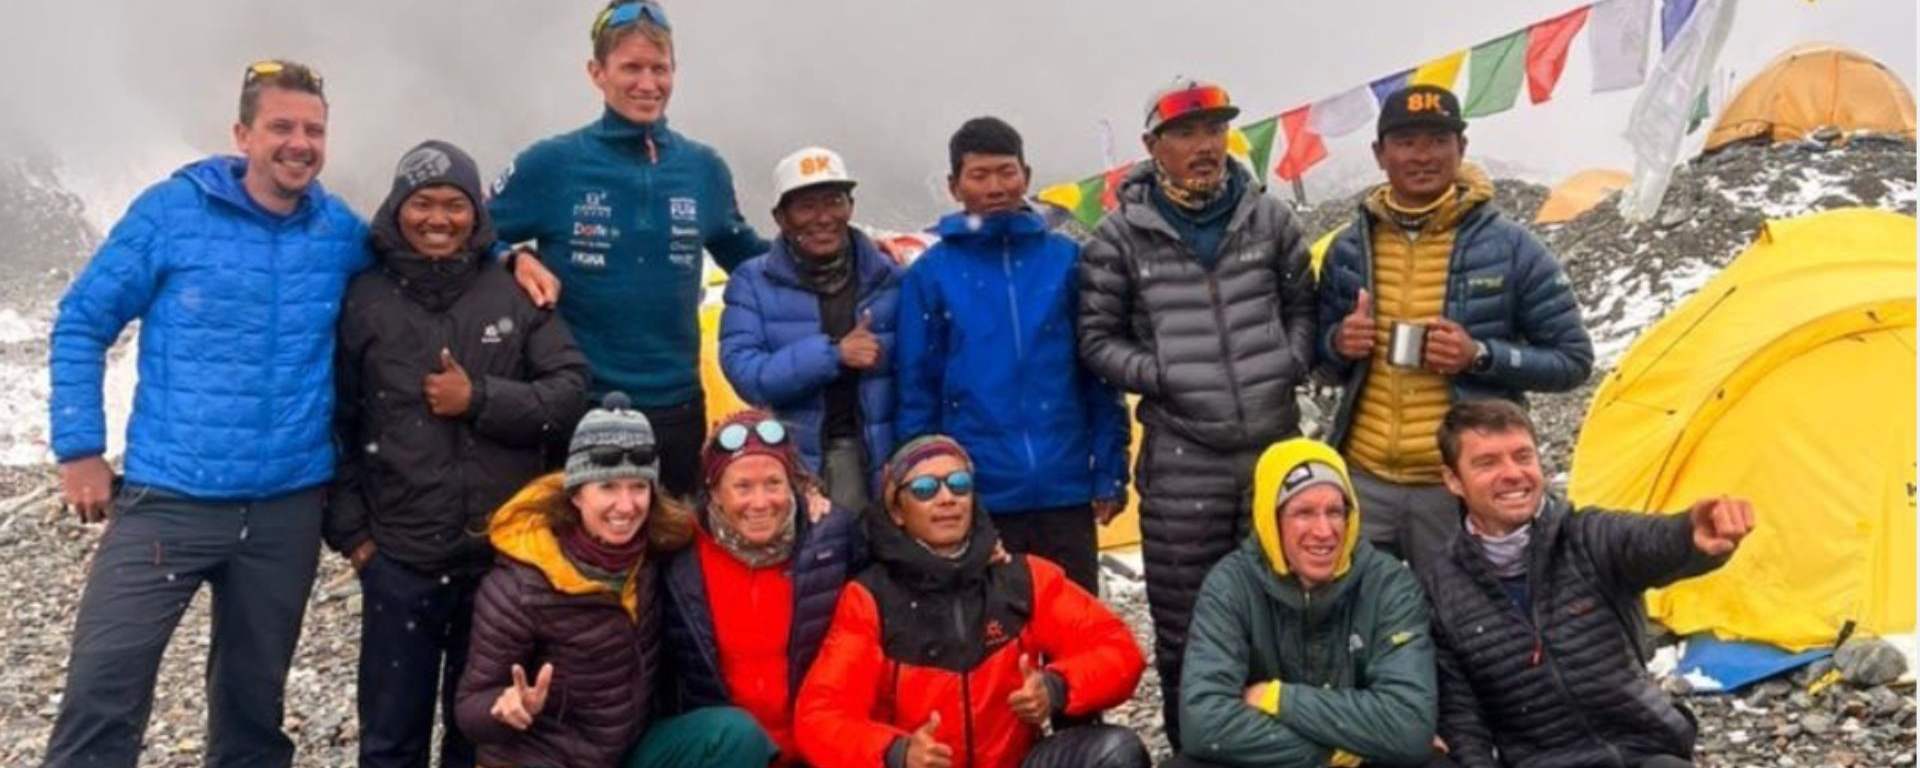 Kristin Harila na K2